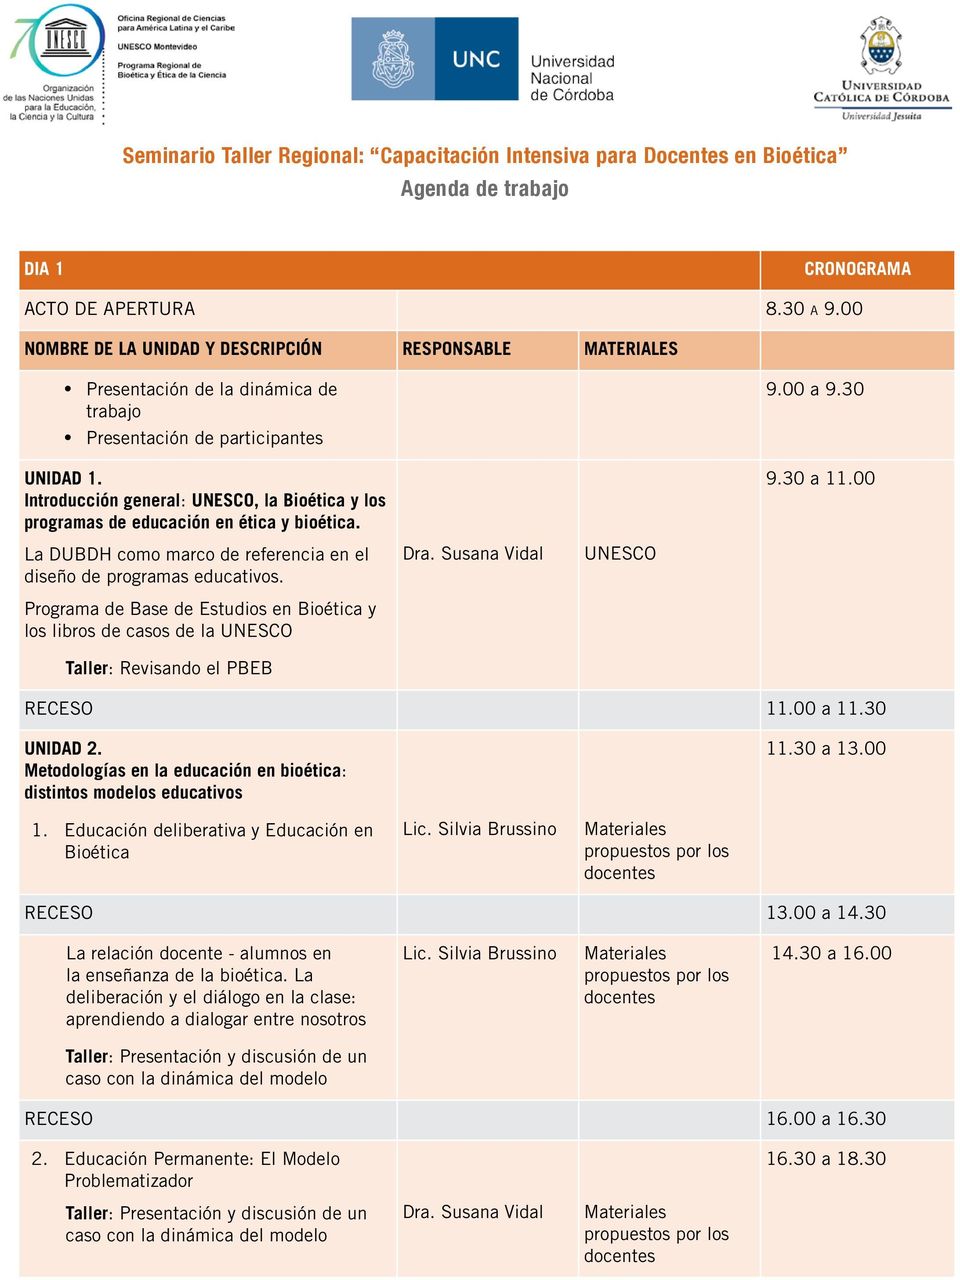 Programa de Base de Estudios en Bioética y los libros de casos de la UNESCO Taller: Revisando el PBEB UNESCO RECESO 11.00 a 11.30 UNIDAD 2.